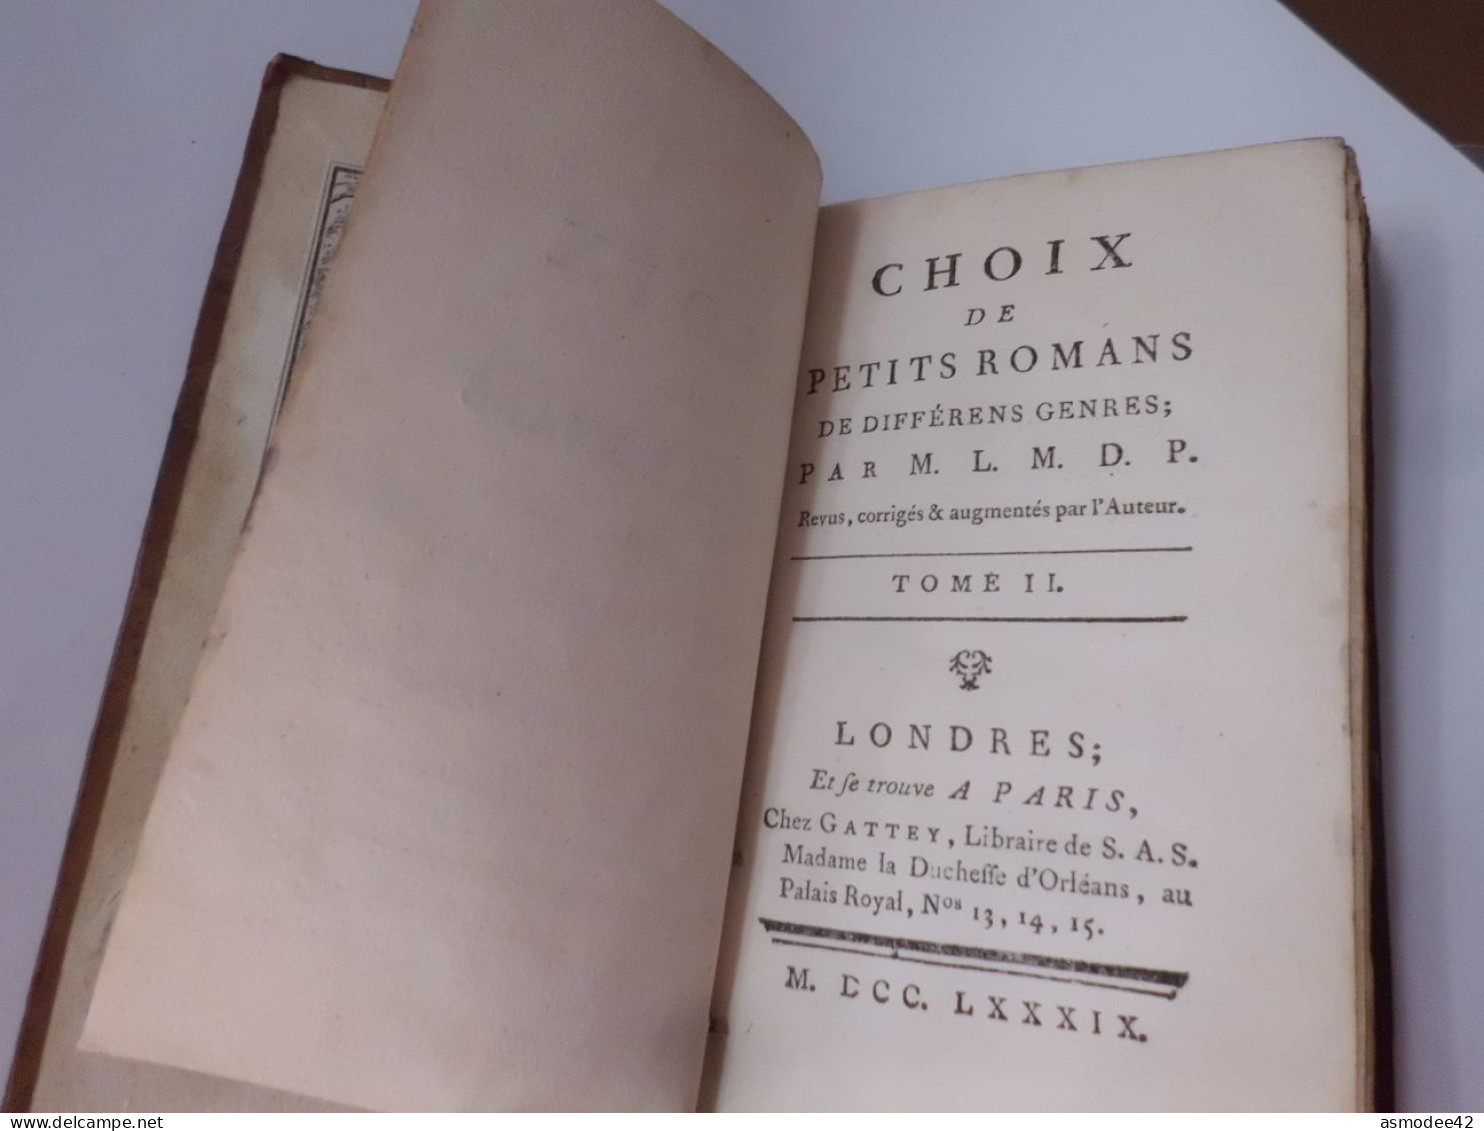 CHOIX DE PETITS ROMANS PAR LE MARQUIS DE PAULMY D ARGENSON 1789  LONDRES  LIVRE ANCIEN XVIIIème  DIM 13 X 7,5cm